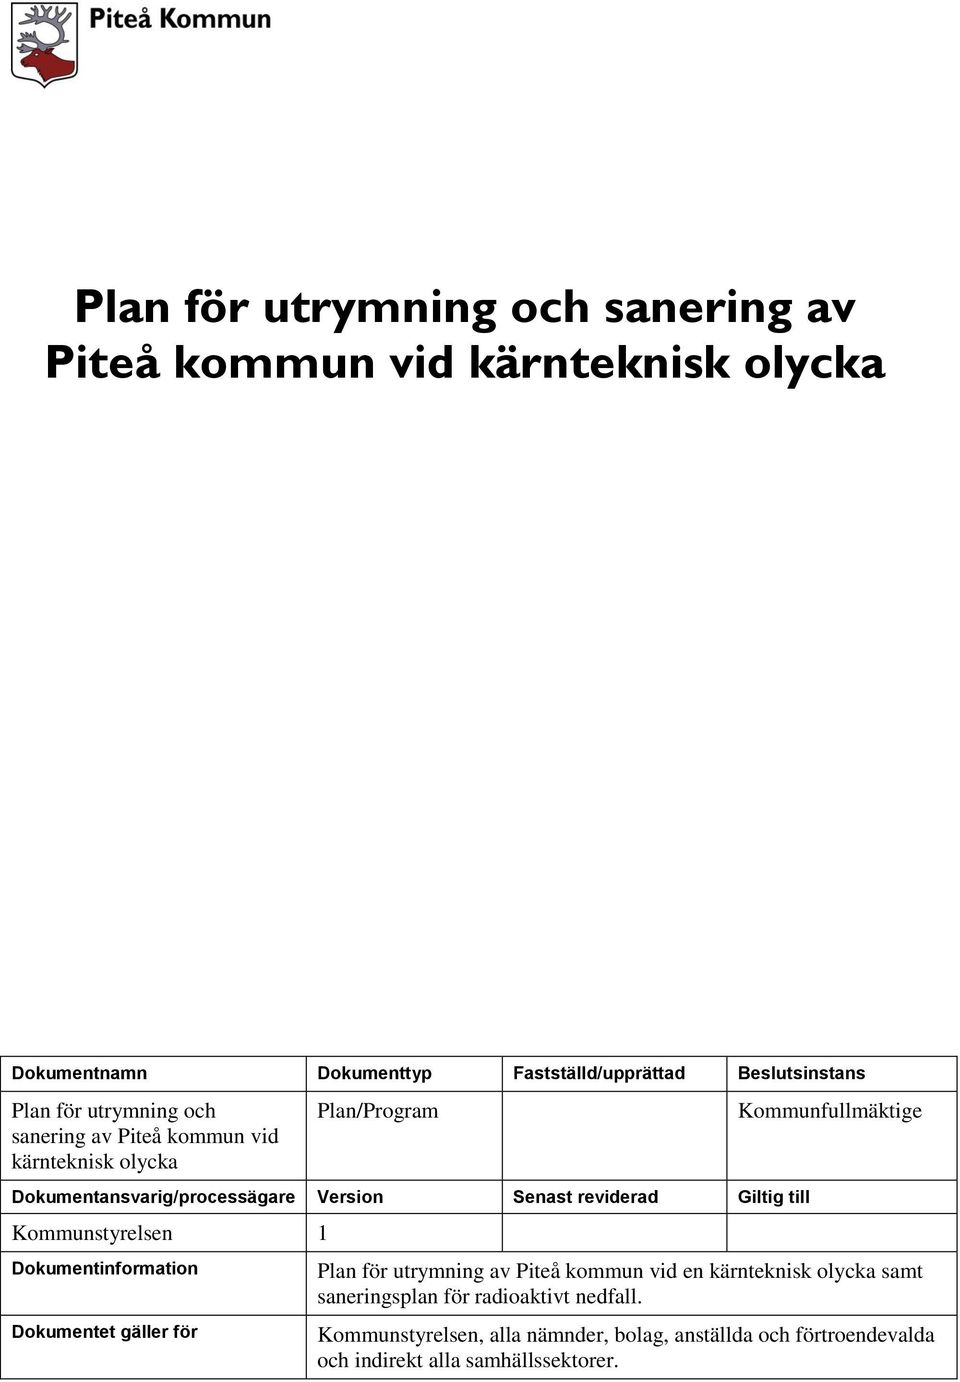 Kommunstyrelsen 1 Dokumentinformation Dokumentet gäller för Kommunfullmäktige Plan för utrymning av Piteå kommun vid en kärnteknisk olycka